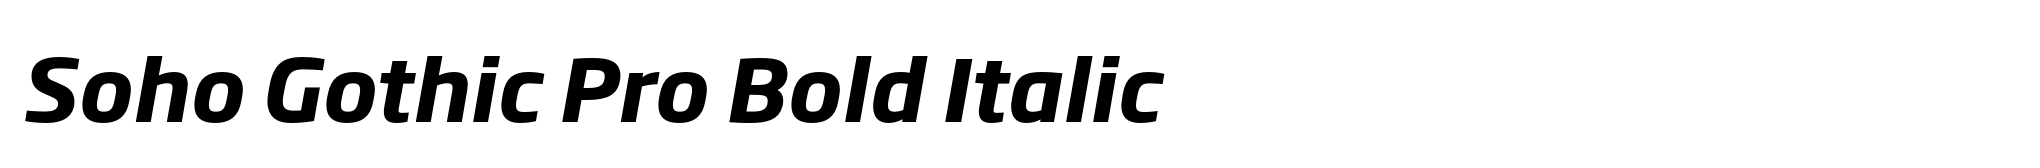 Soho Gothic Pro Bold Italic image